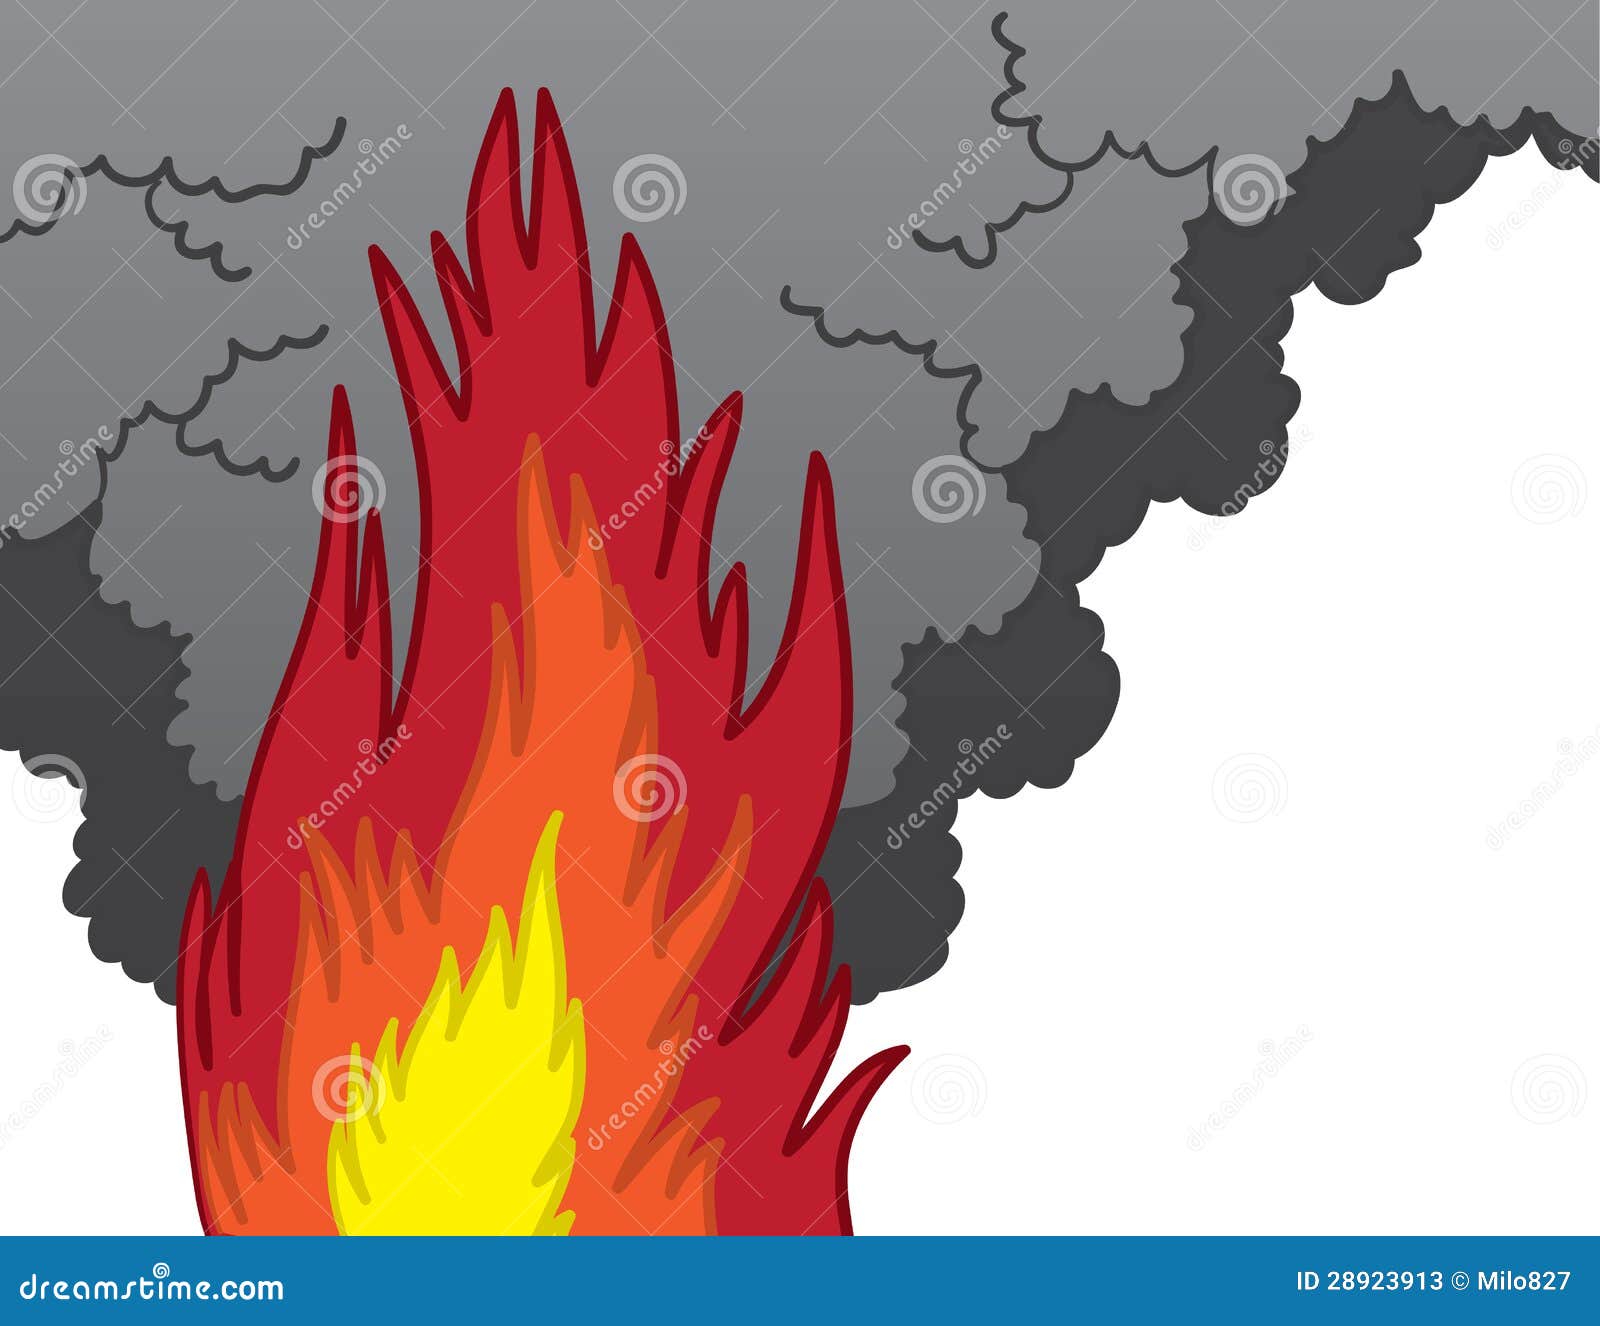 Efecto De Dibujos Animados De Humo De Fuego Dibujos Animados Images